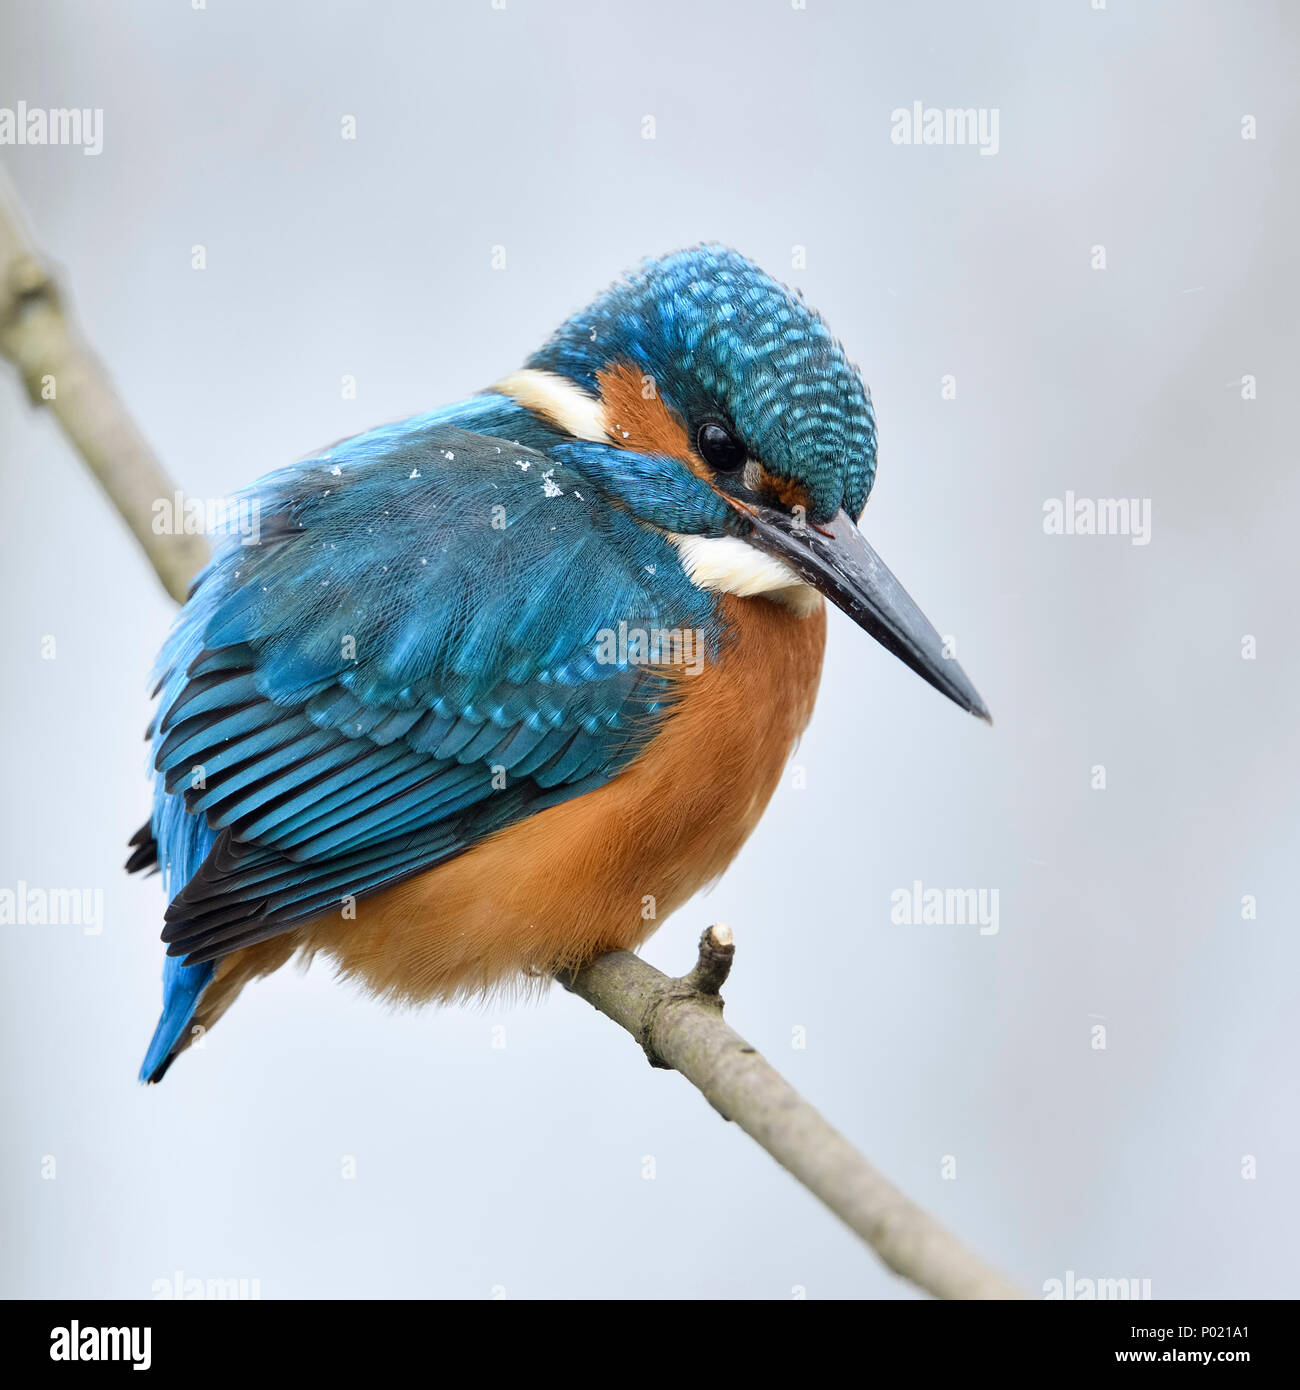 Kingfisher eurasien Alcedo atthis Optimize ( / ), homme en hiver, perché sur une branche avec des flocons de neige sur le dos, de la faune, de l'Europe. Banque D'Images